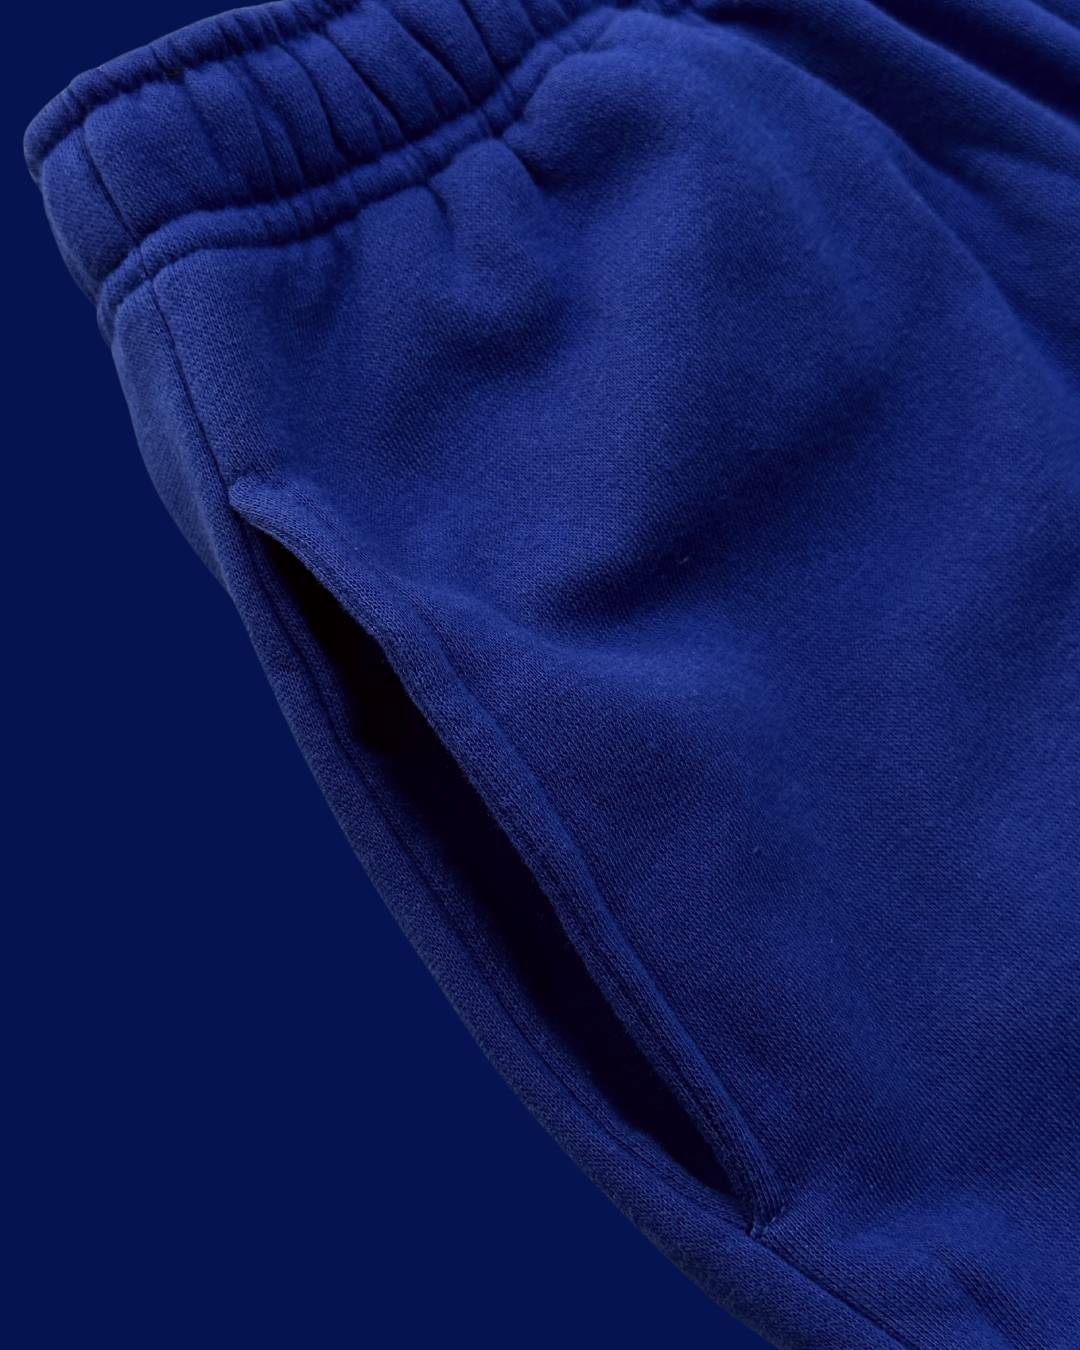 Sweatpants in Blue